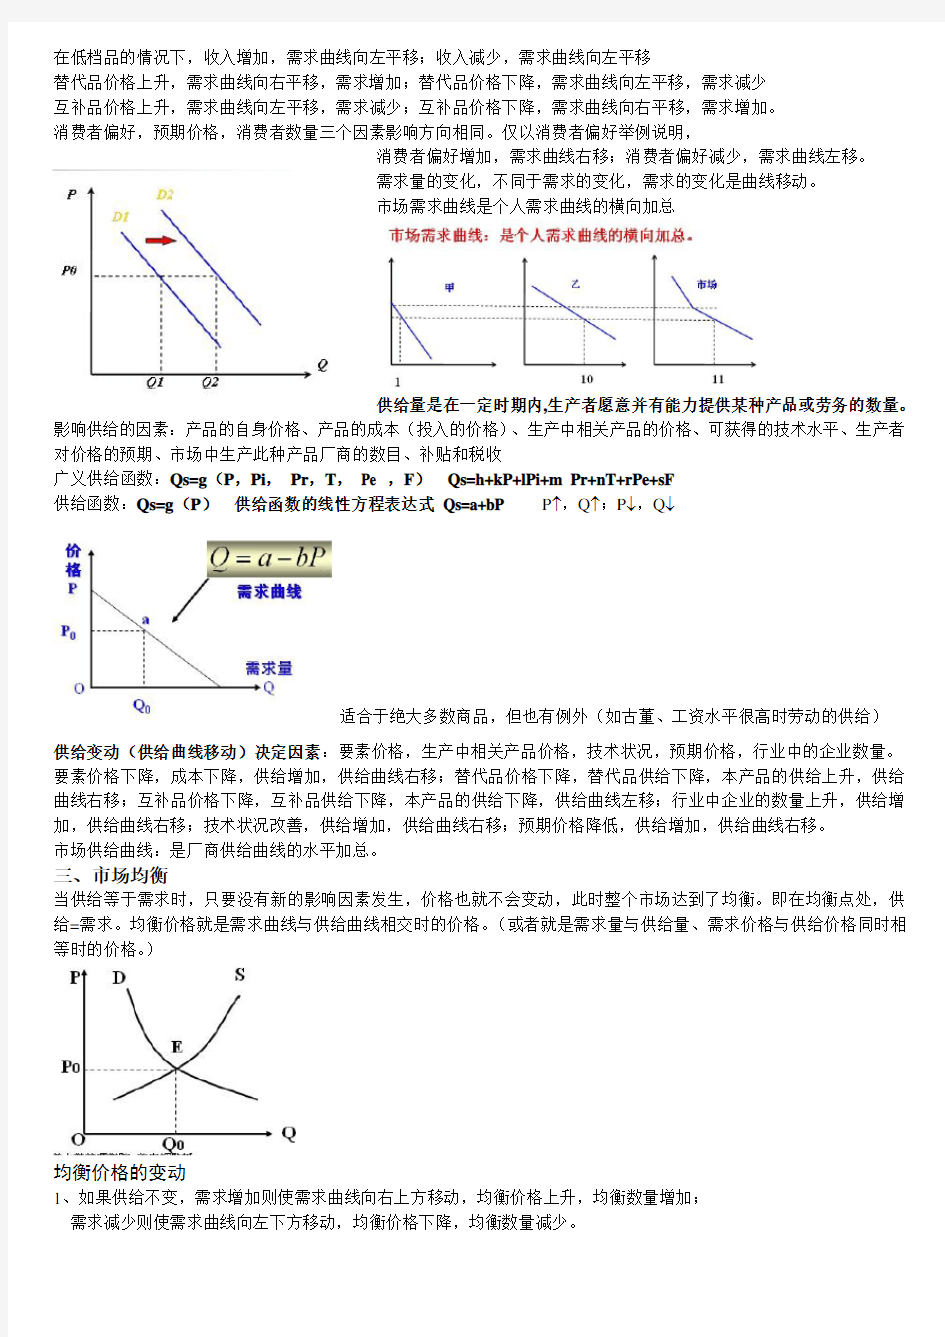 中国海洋大学管理经济学个人整理(木有权威性,仅供参考)